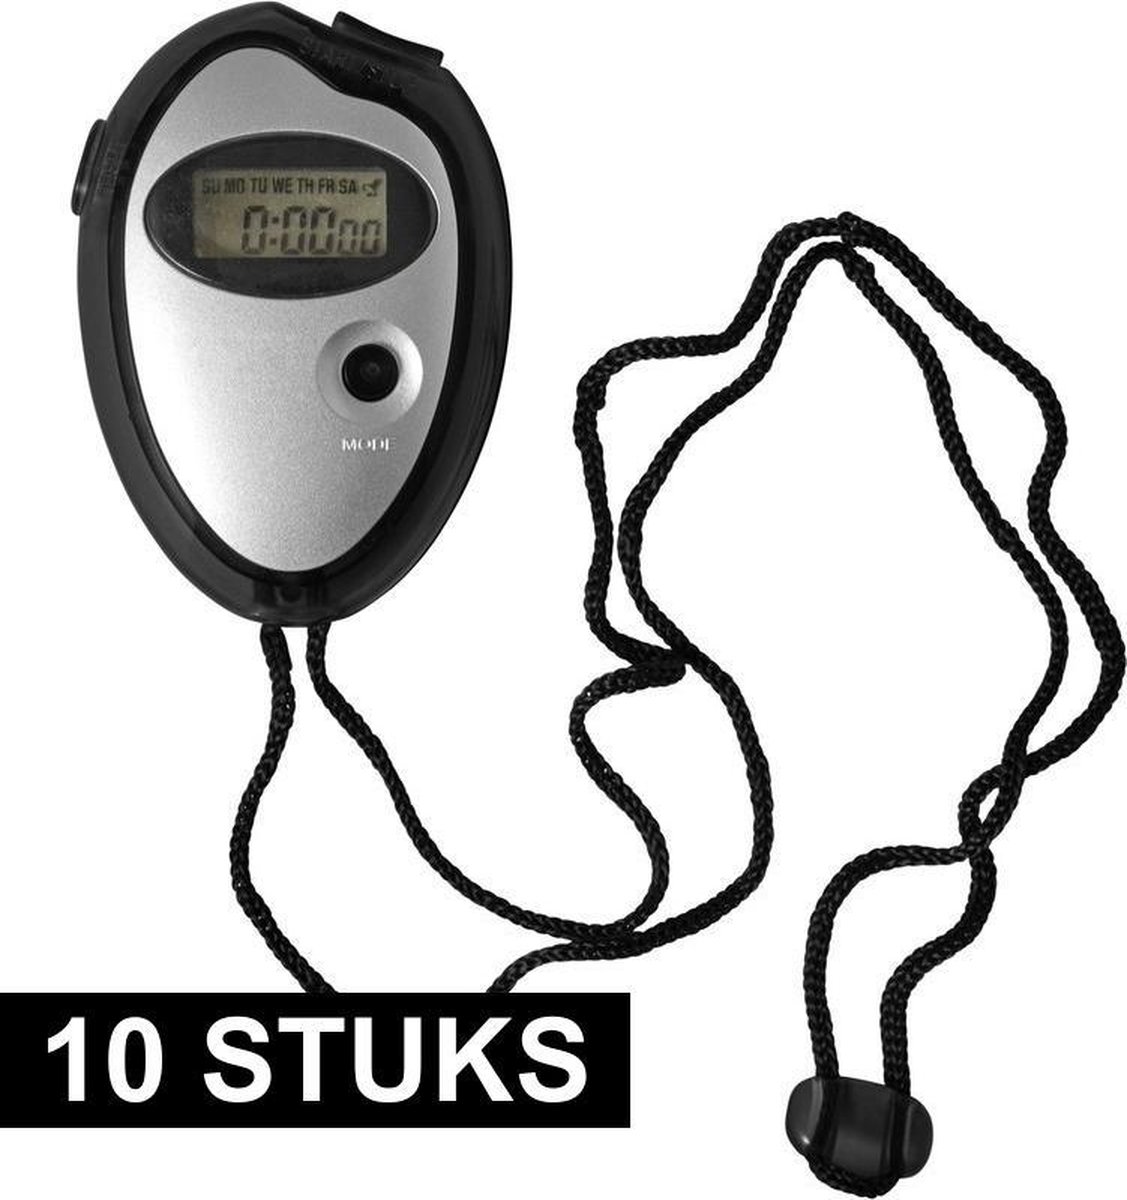 10x Voordelige digitale sport stopwatch zwart/metallic zilver - Merkloos